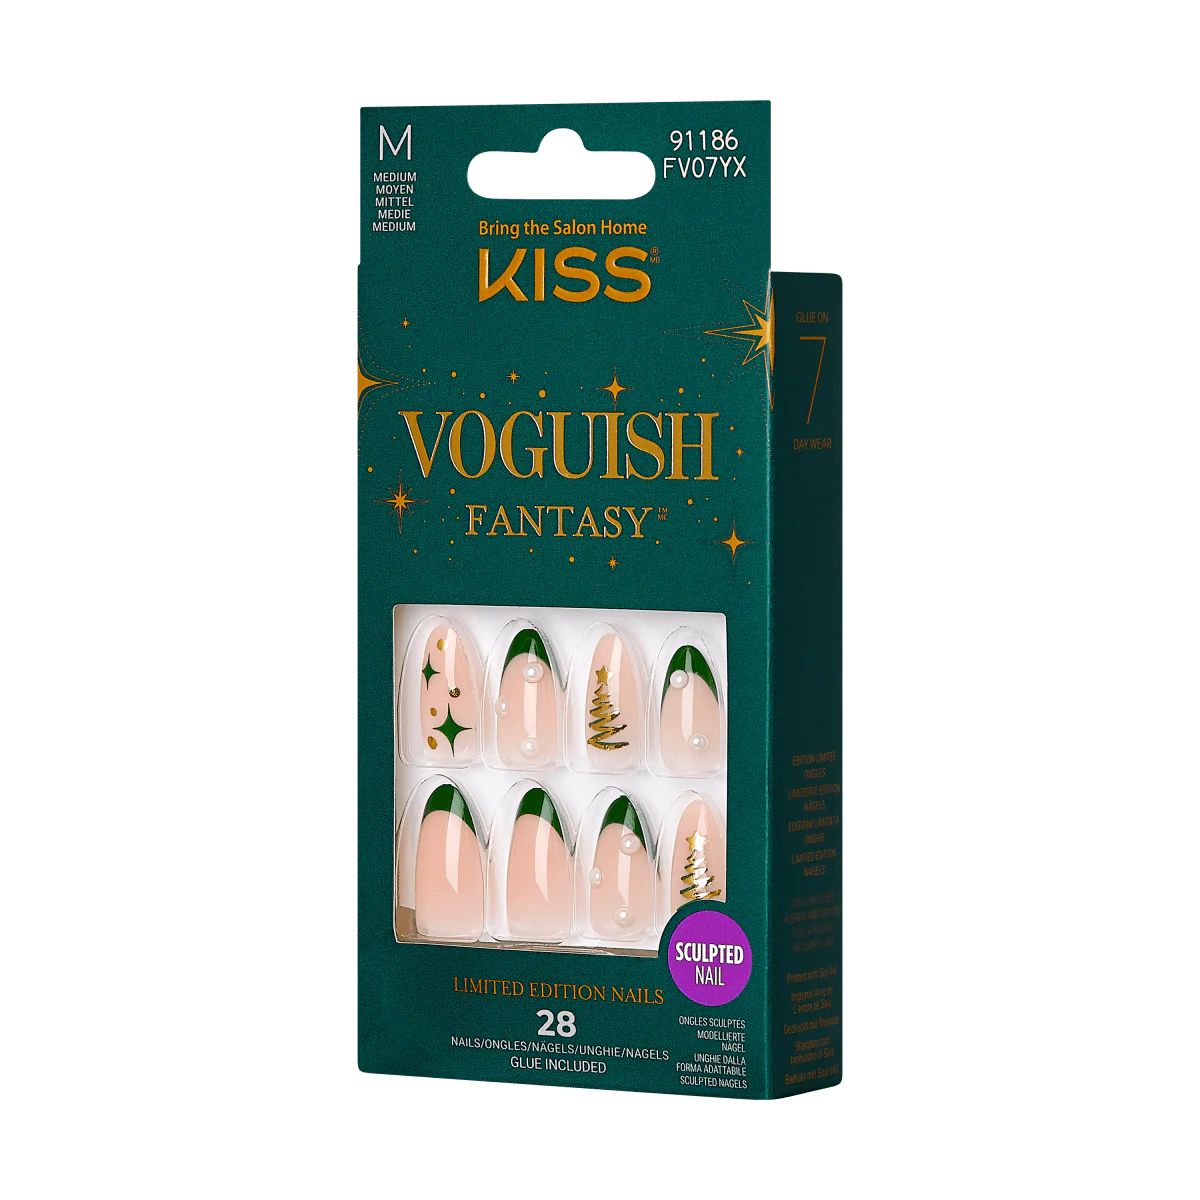 KISS Voguish Fantasy Holiday Press-On Nails, Green, Medium Length, Almond Shaped, 31 Ct. | KISS, imPRESS, JOAH